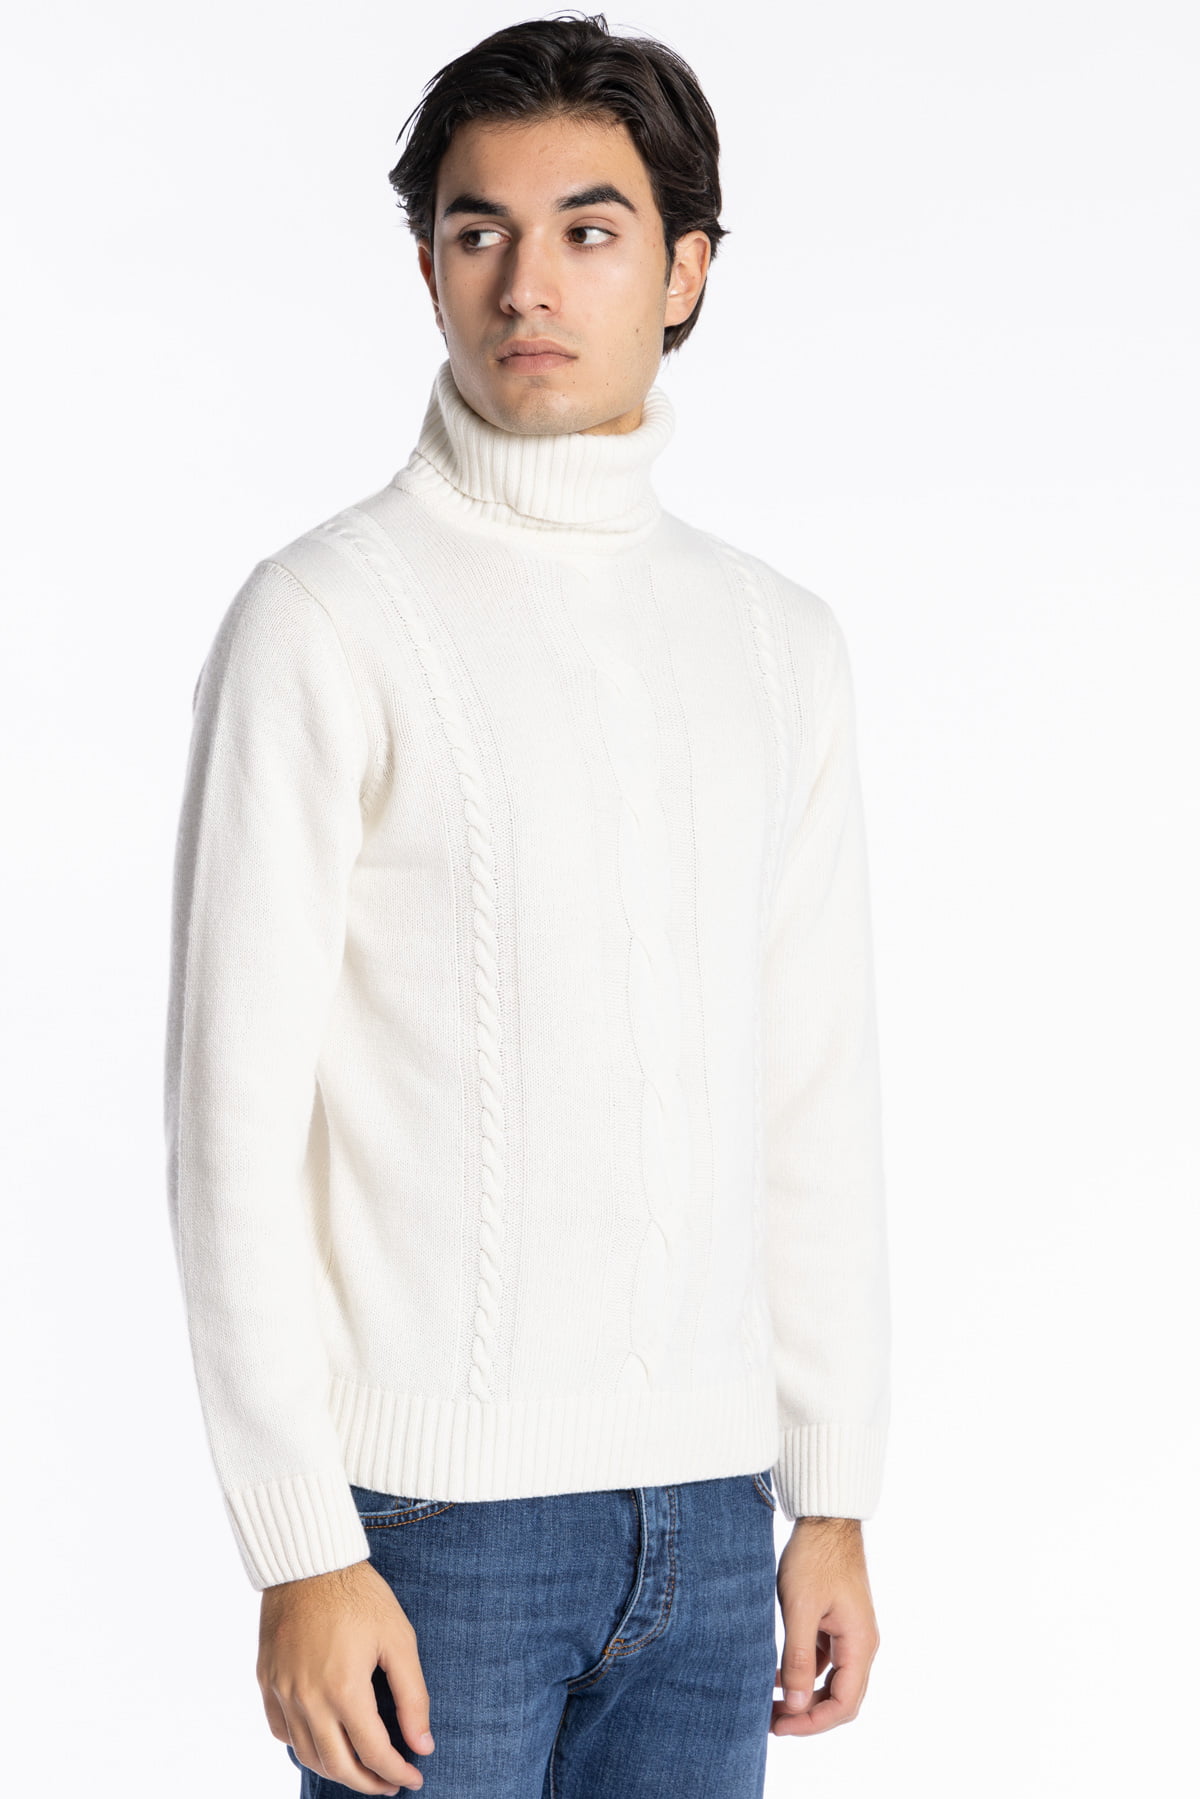 Maglione da uomo collo alto bianco in lana e Cashmere con trama treccia interna maniche lunghe